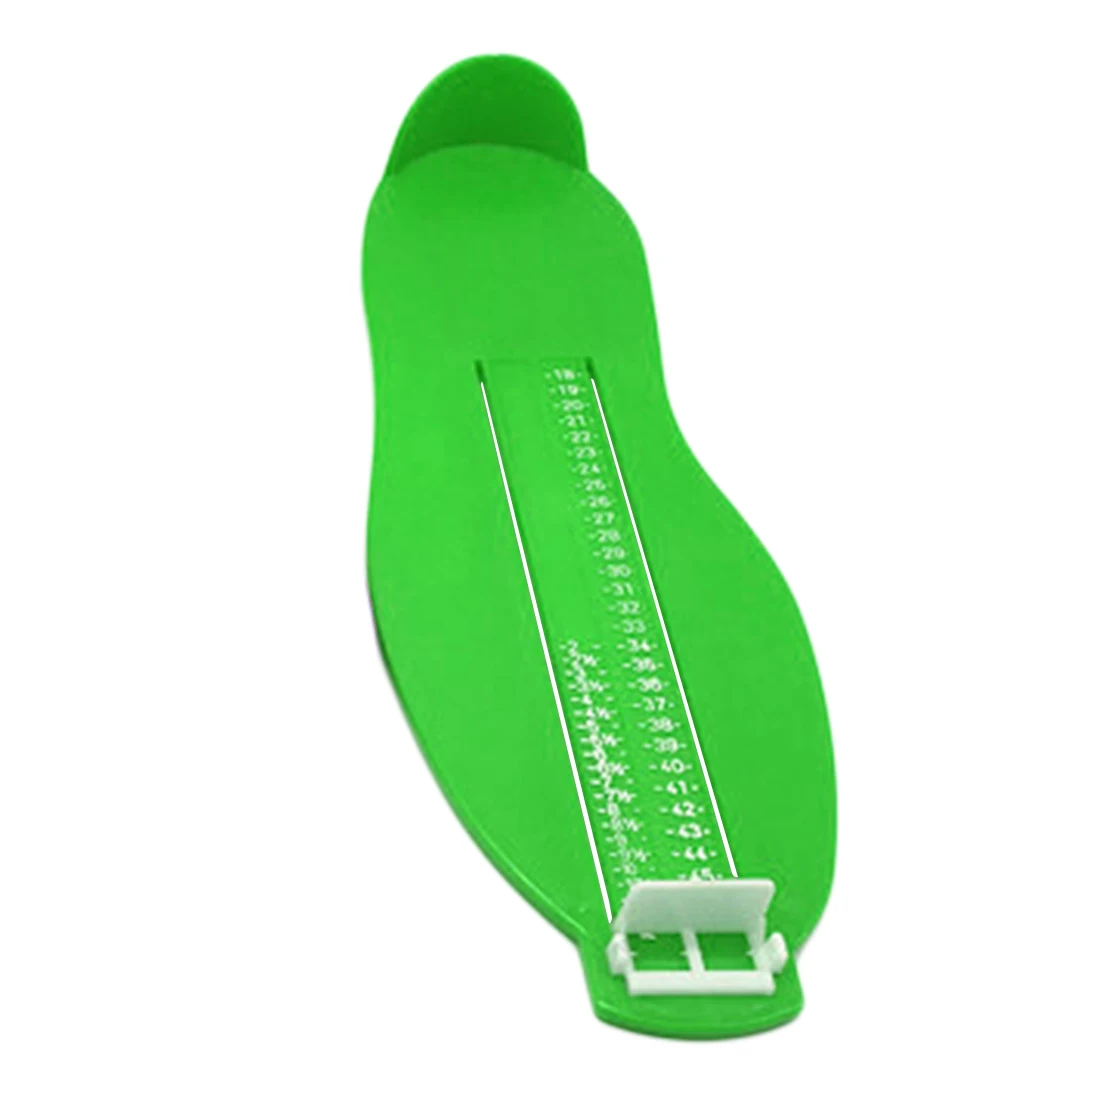 4 цвета измеритель ноги 1 шт Взрослые Ноги измерительный прибор обувь Размер прибор измерение Линейка Инструмент устройство помощник